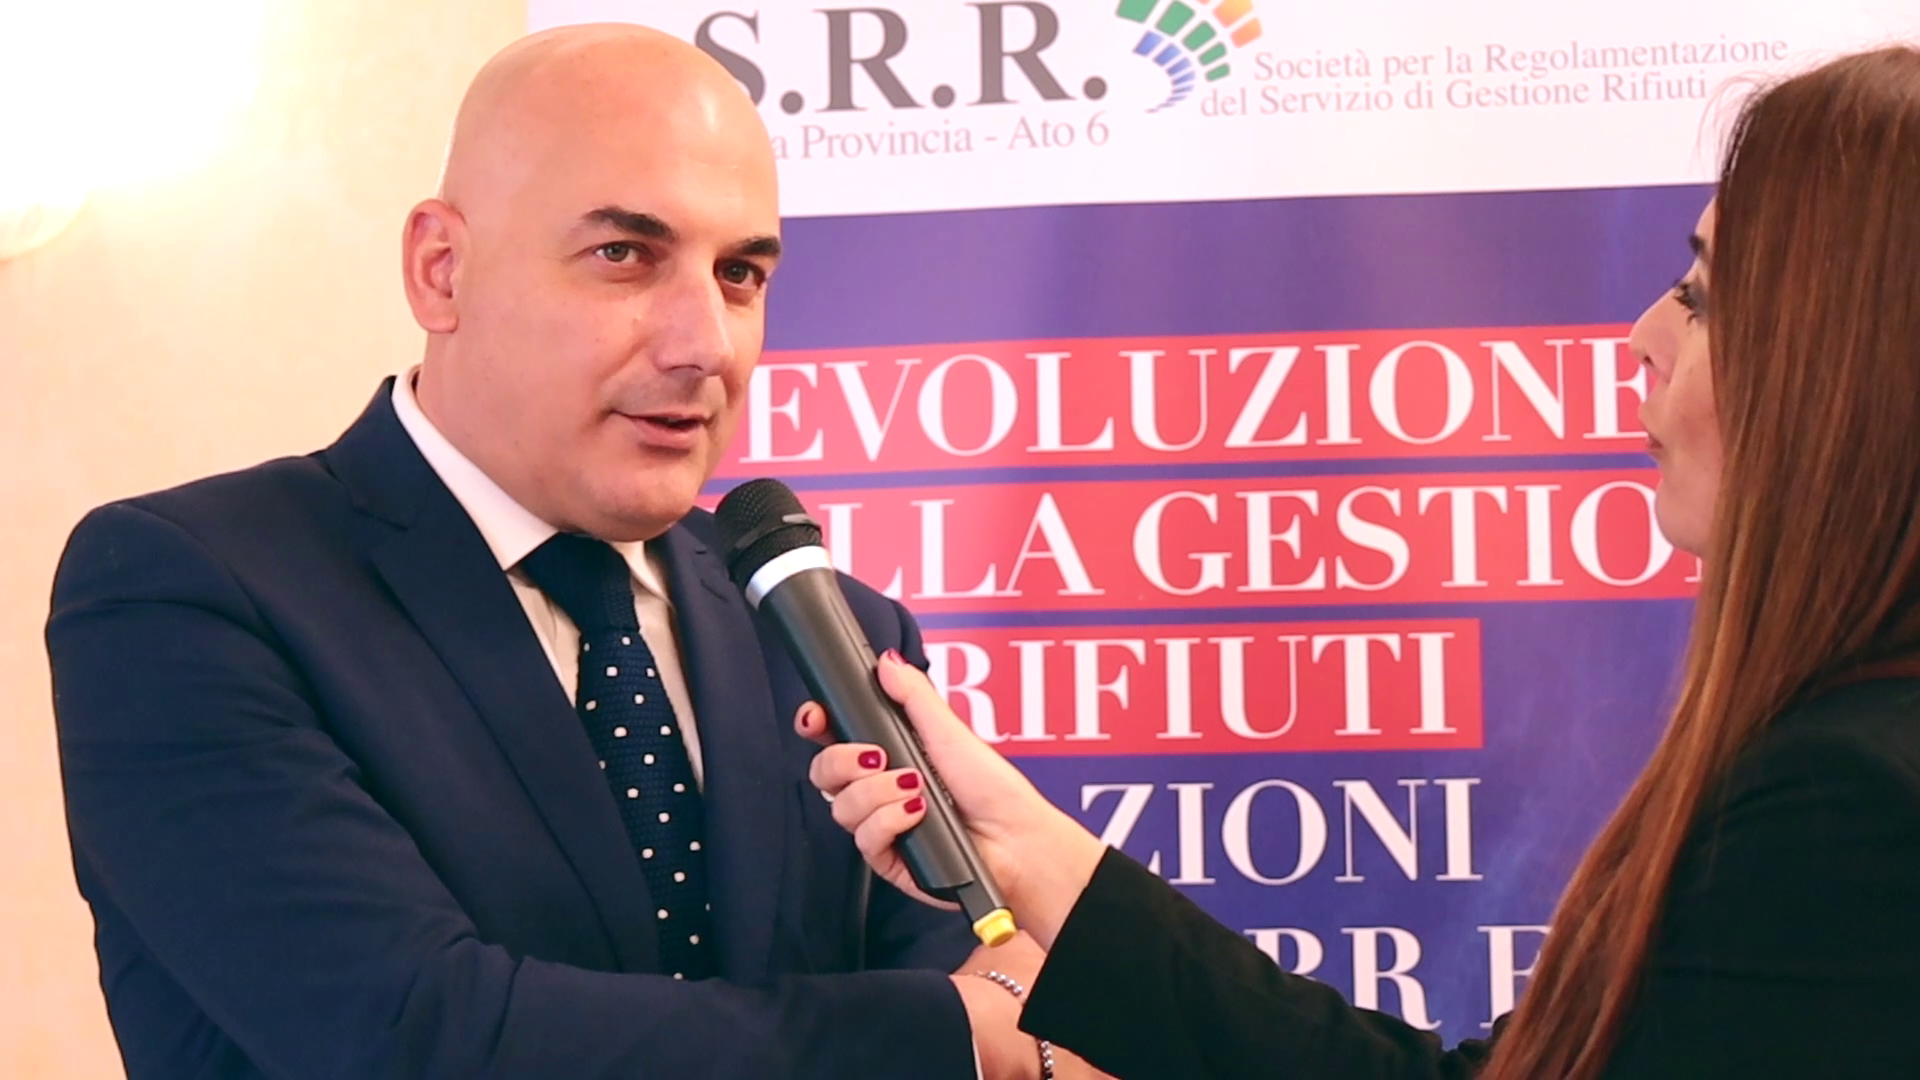 Post successivo: Enna, convegno su gestione dei Rifiuti in Sicilia: le video interviste